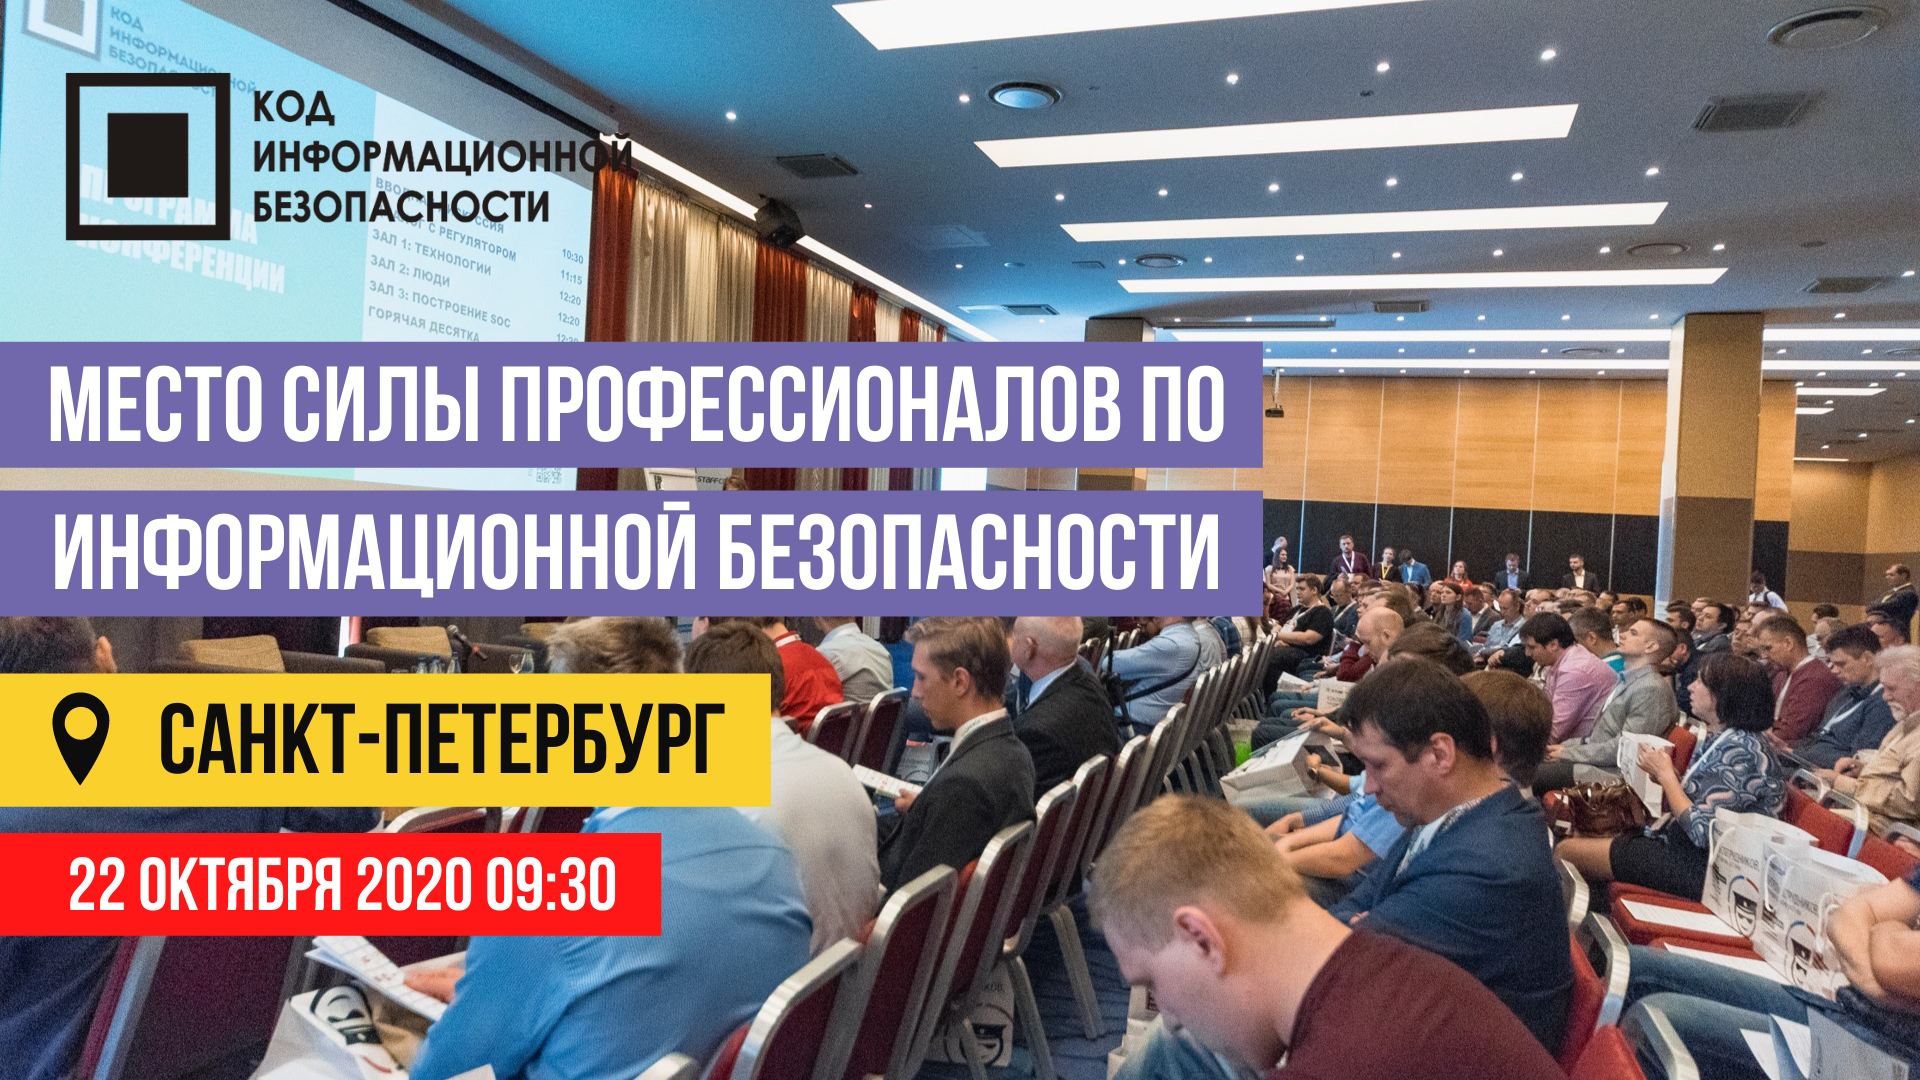 Конференция по информационной безопасности в Северной столице России пройдёт 22 октября